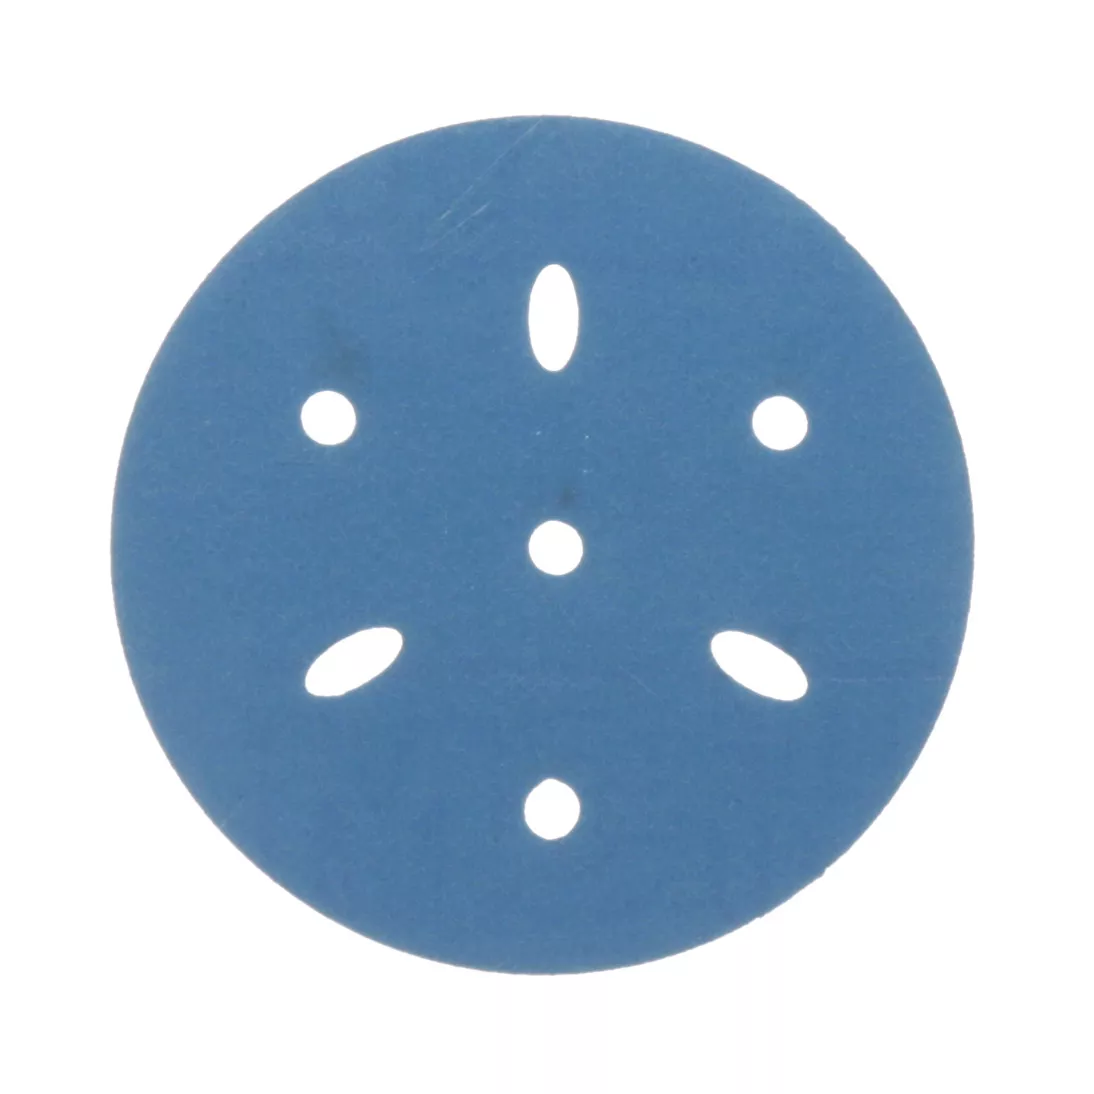 3M™ Hookit™ Blue Abrasive Disc 321U Multi-hole, 36151, 3 in, 400, 50
discs per carton, 4 cartons per case